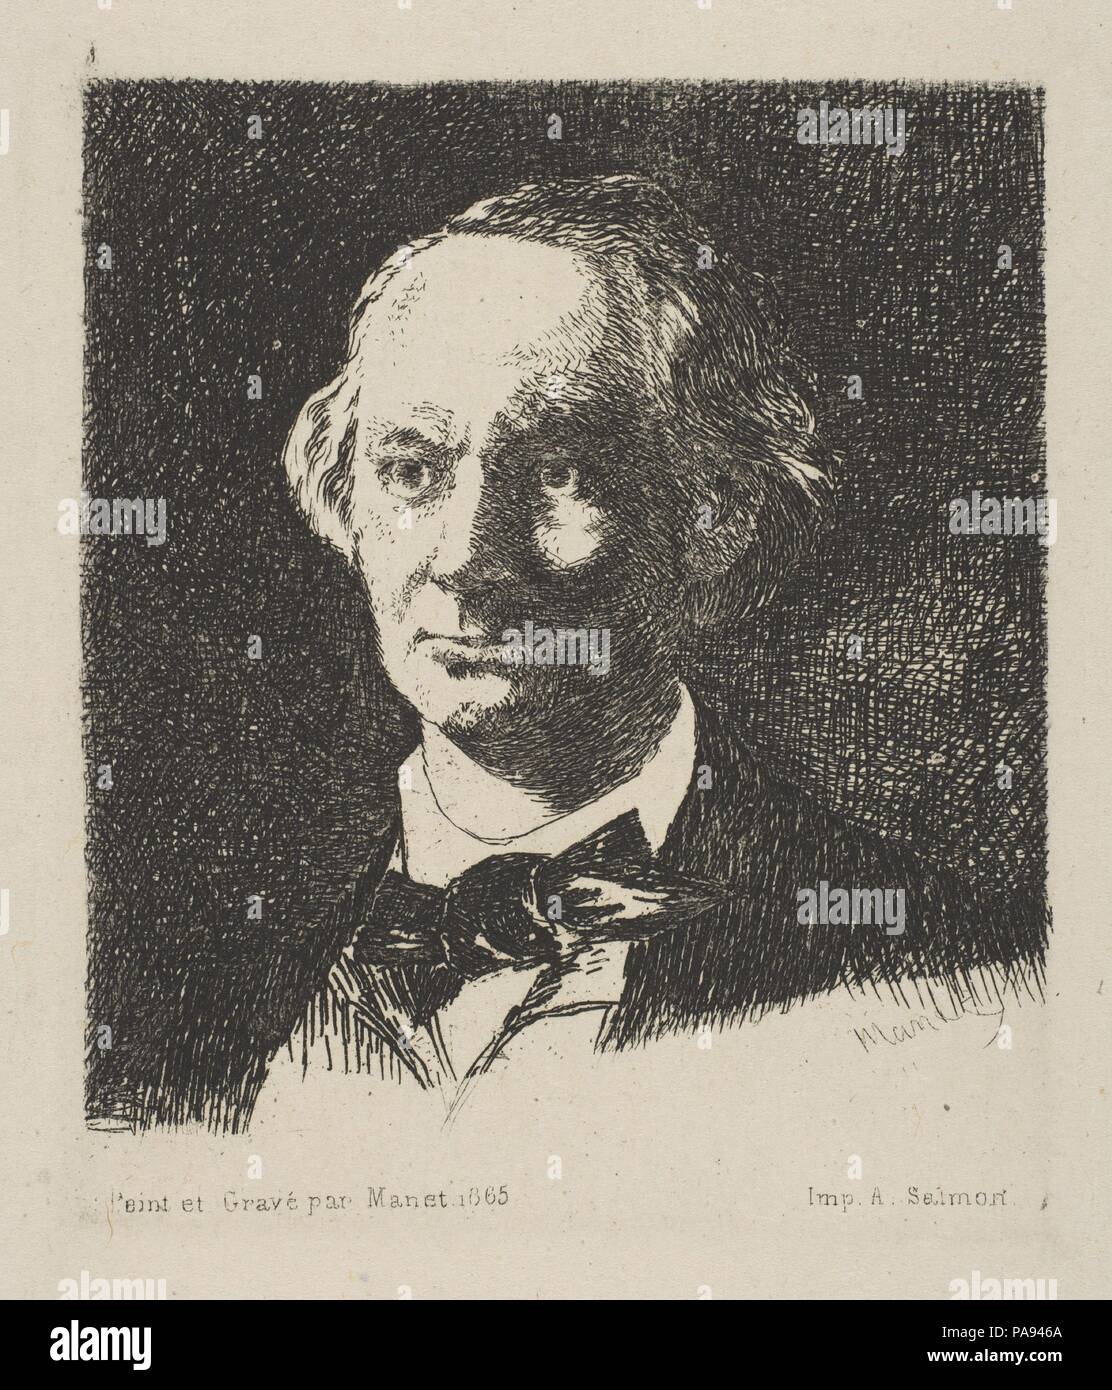 Ritratto di Charles Baudelaire, Full Face, dopo una fotografia di Nadar. Artista: Édouard Manet (francese, Parigi Parigi 1832-1883); dopo Nadar (francese, Parigi Parigi 1820-1910). Dimensioni: piastra: 3 11/16 x 3 1/4 in. (9,4 x 8,2 cm) foglio: 10 3/16 x 8 7/16 in. (25,9 x 21,5 cm). Sitter: Charles Baudelaire (francese, Parigi Parigi 1821-1867). Data: 1868. Museo: Metropolitan Museum of Art di New York, Stati Uniti d'America. Foto Stock